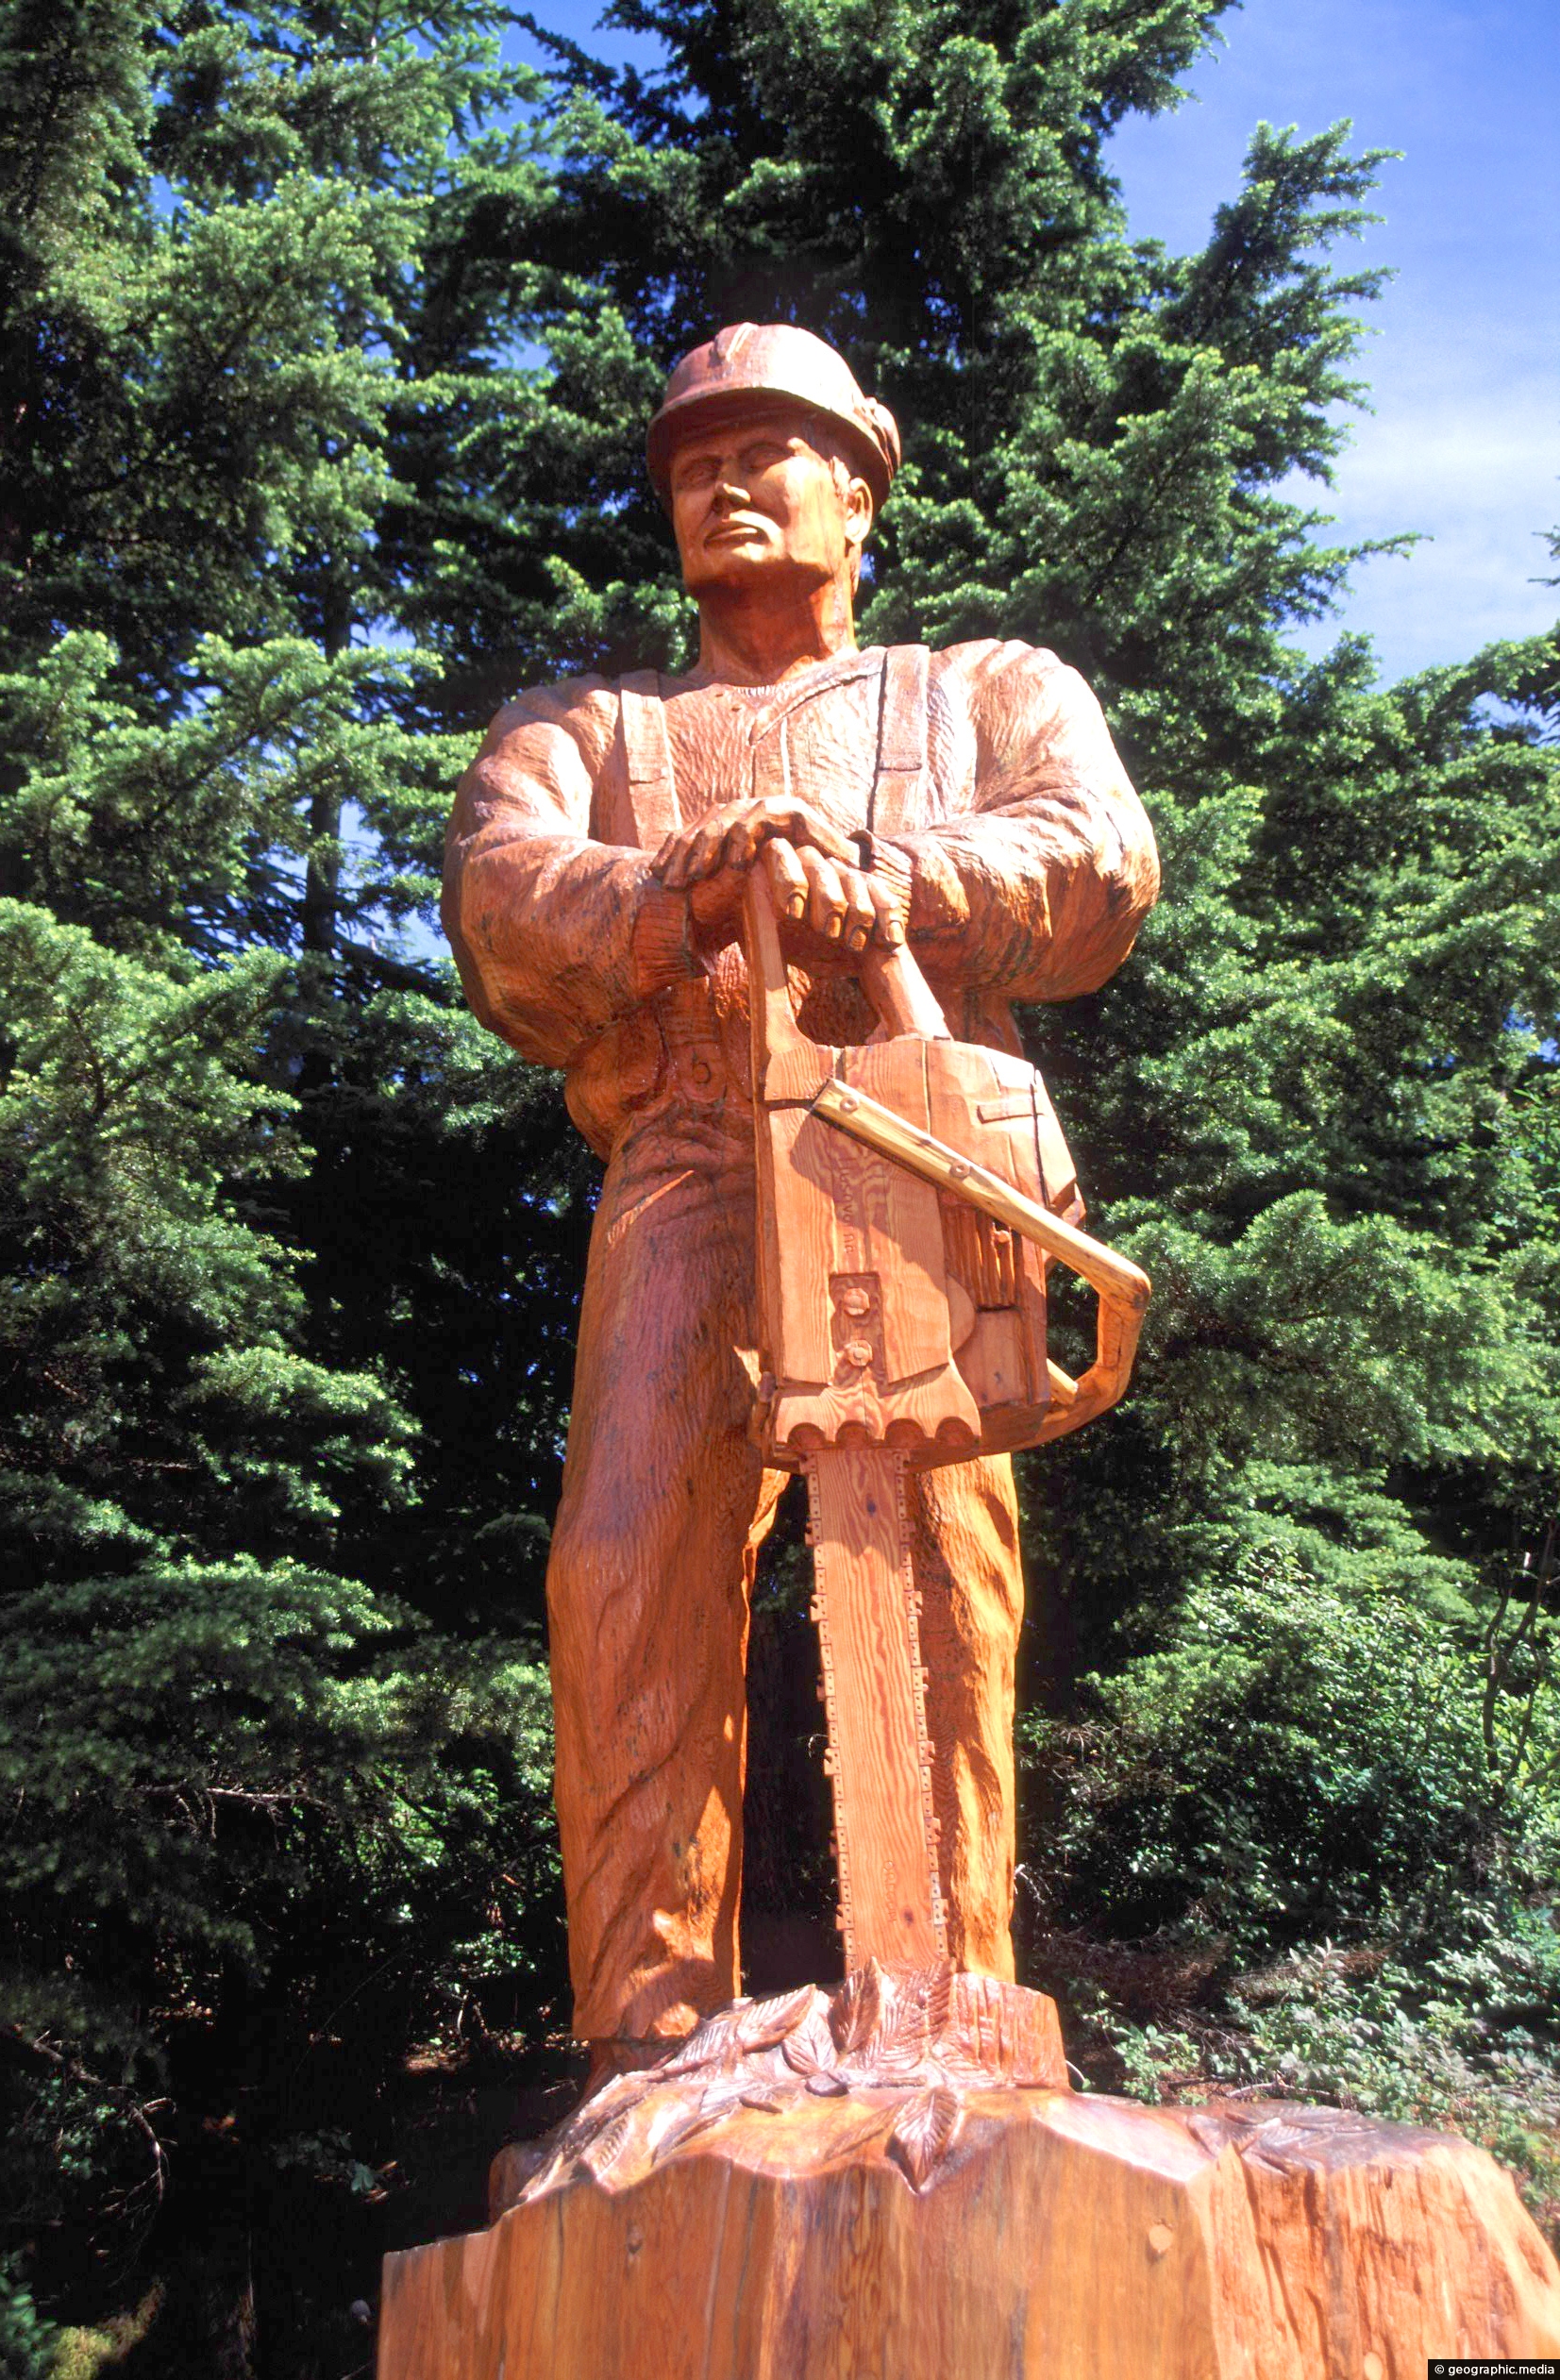 Sculpture on Grouse Mountain